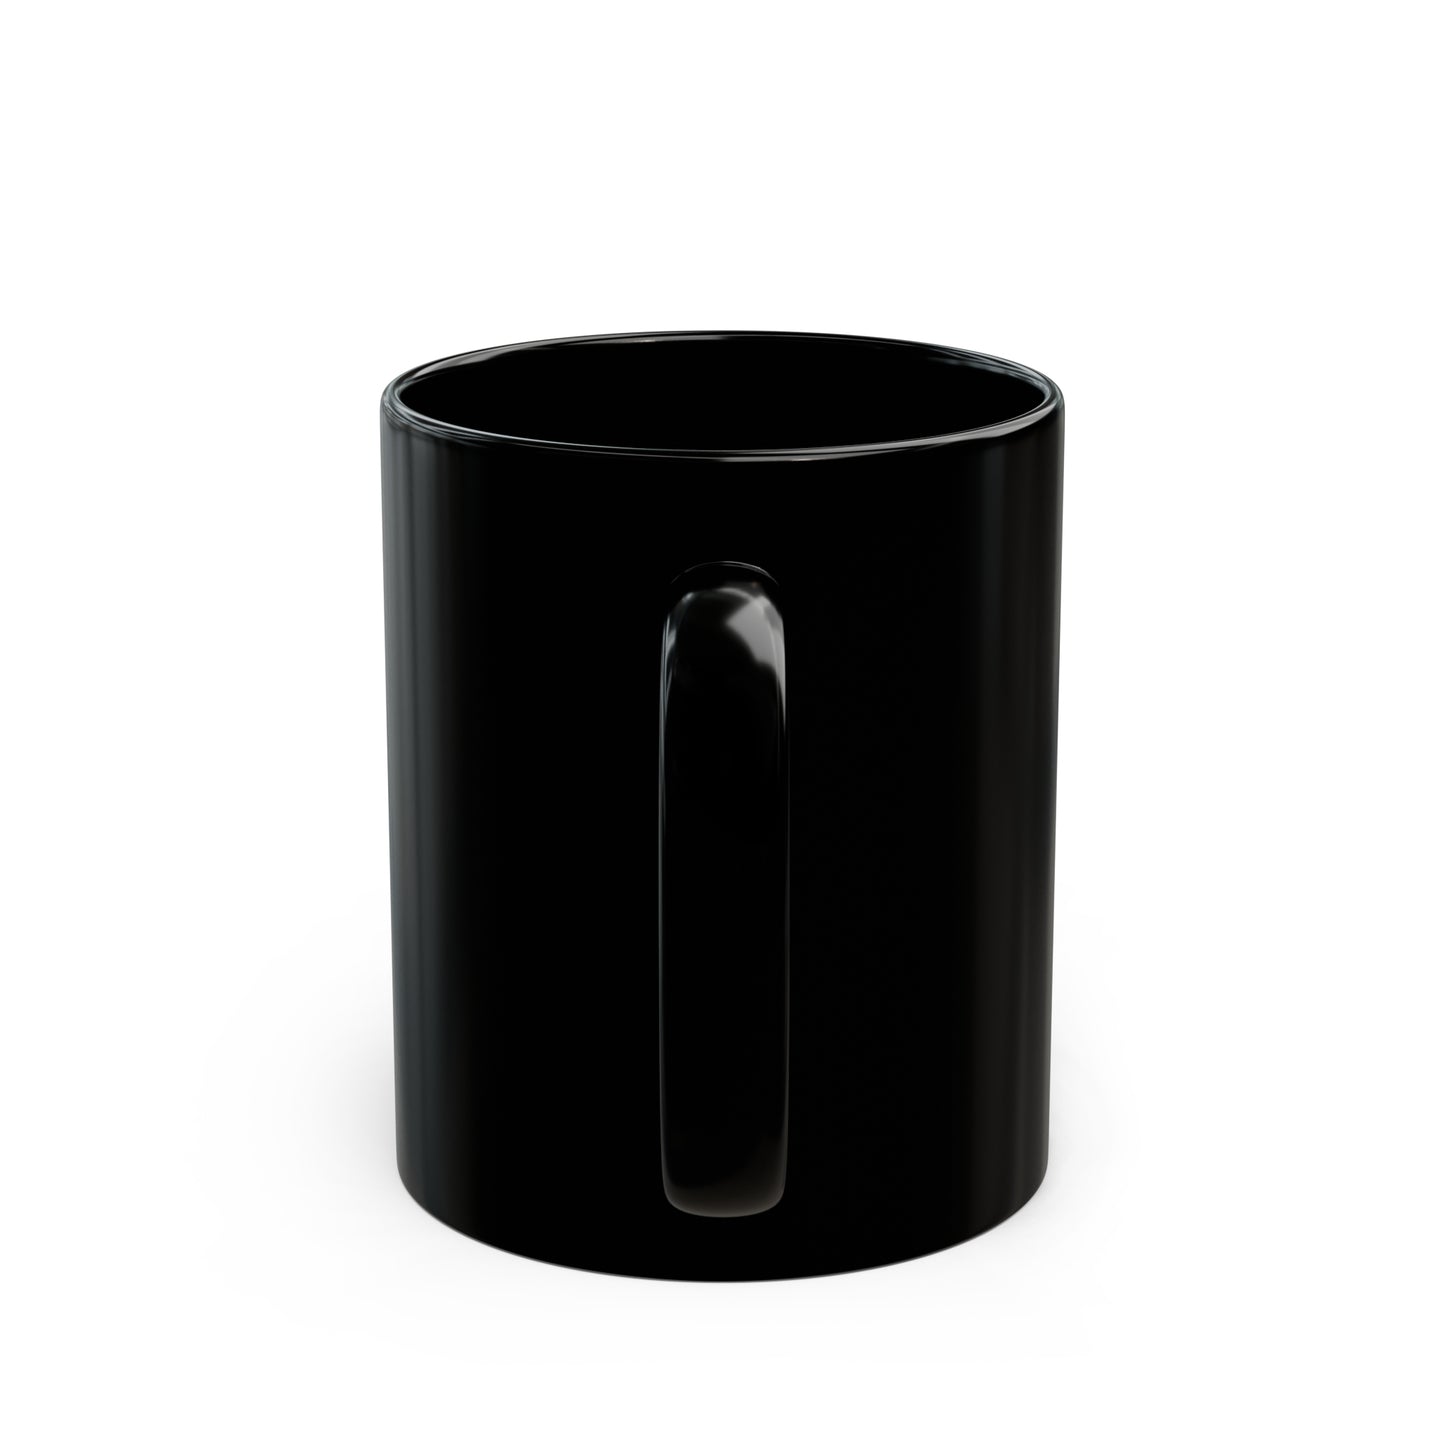 CTRL Logo Black Mug 11oz